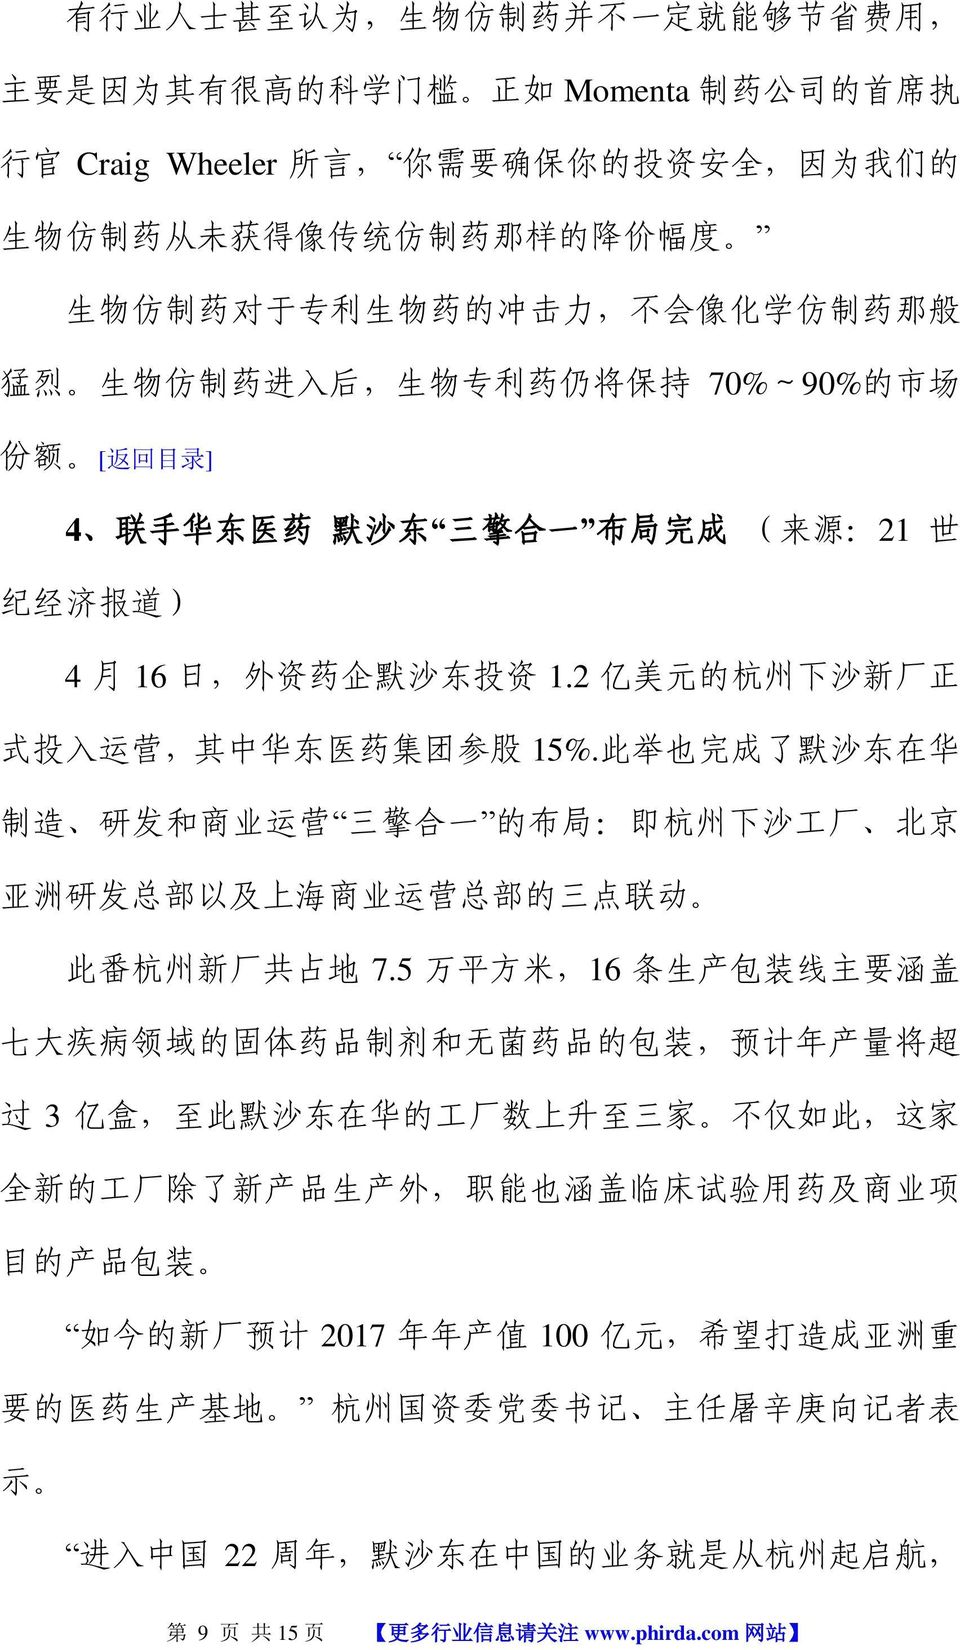 外 资 药 企 默 沙 东 投 资 1.2 亿 美 元 的 杭 州 下 沙 新 厂 正 式 投 入 运 营, 其 中 华 东 医 药 集 团 参 股 15%.